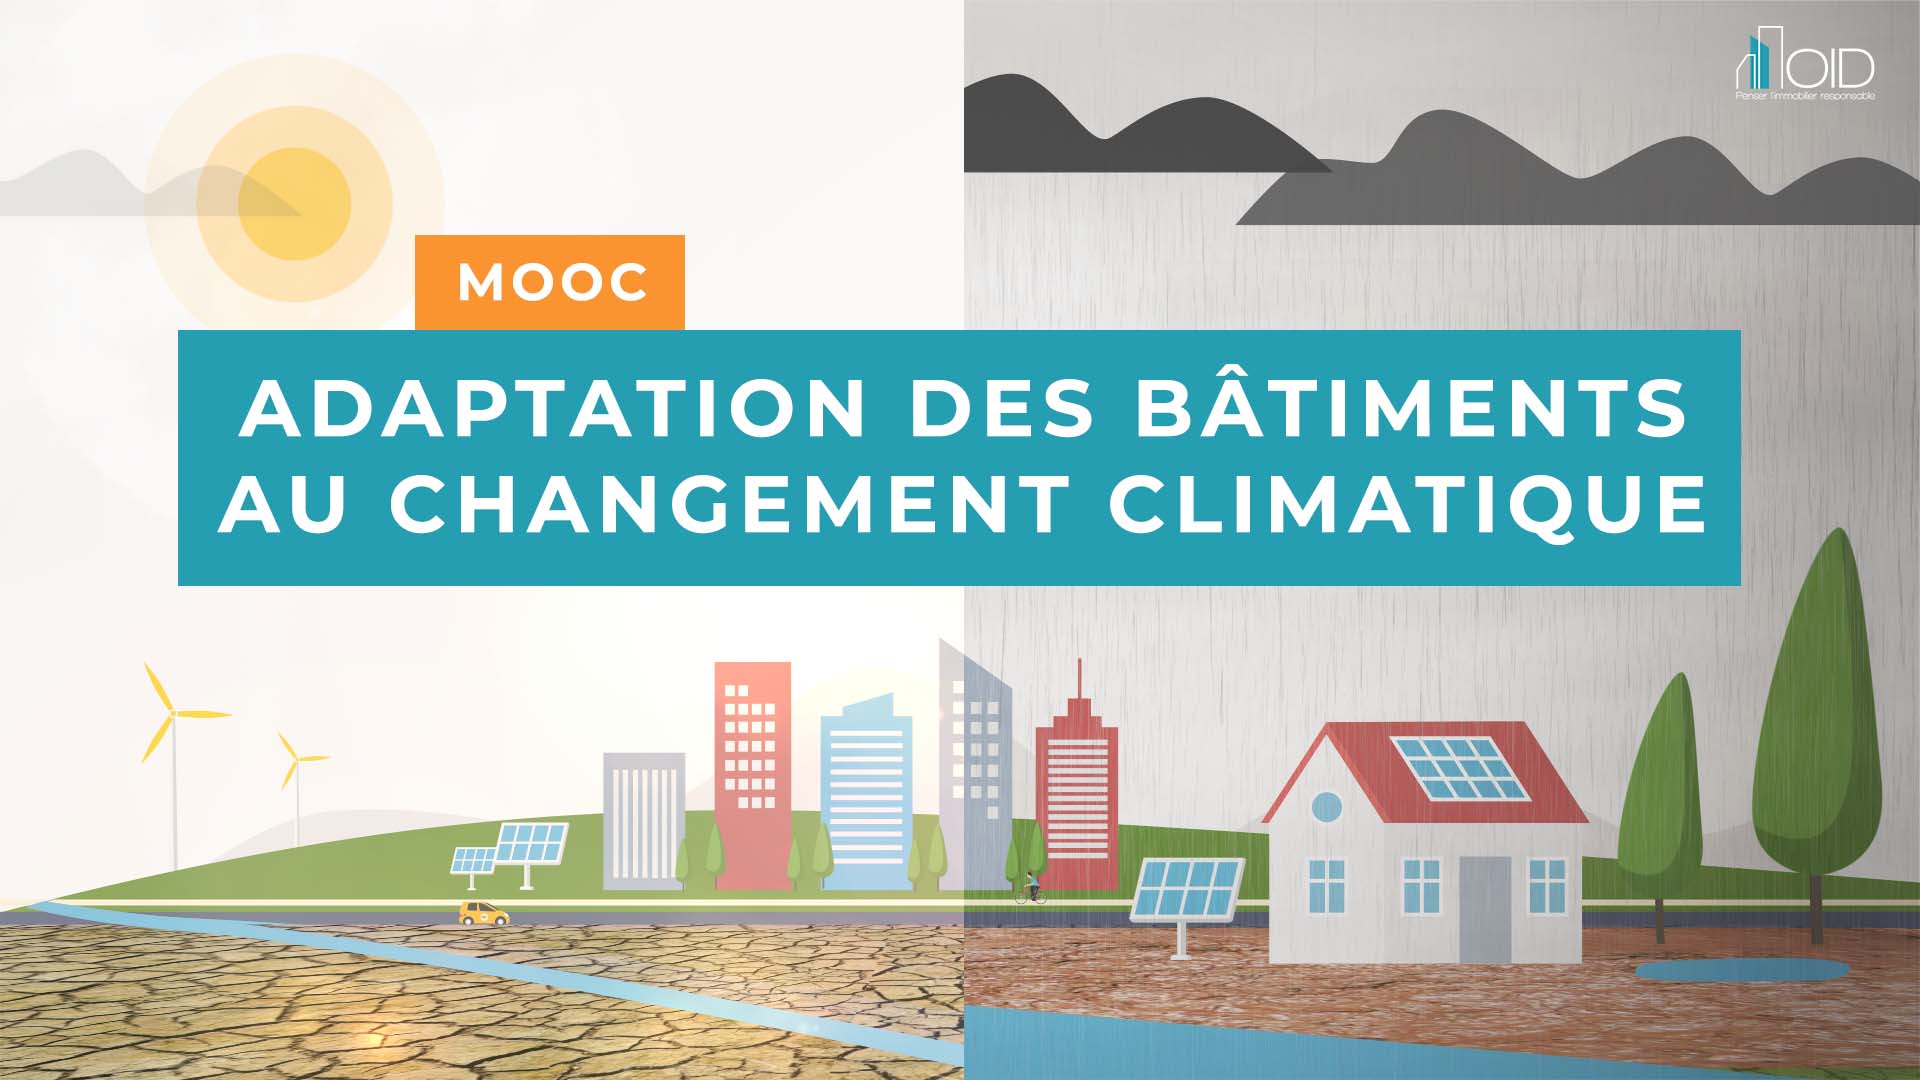 MOOC Adaptation des bâtiments au changement climatique 2021